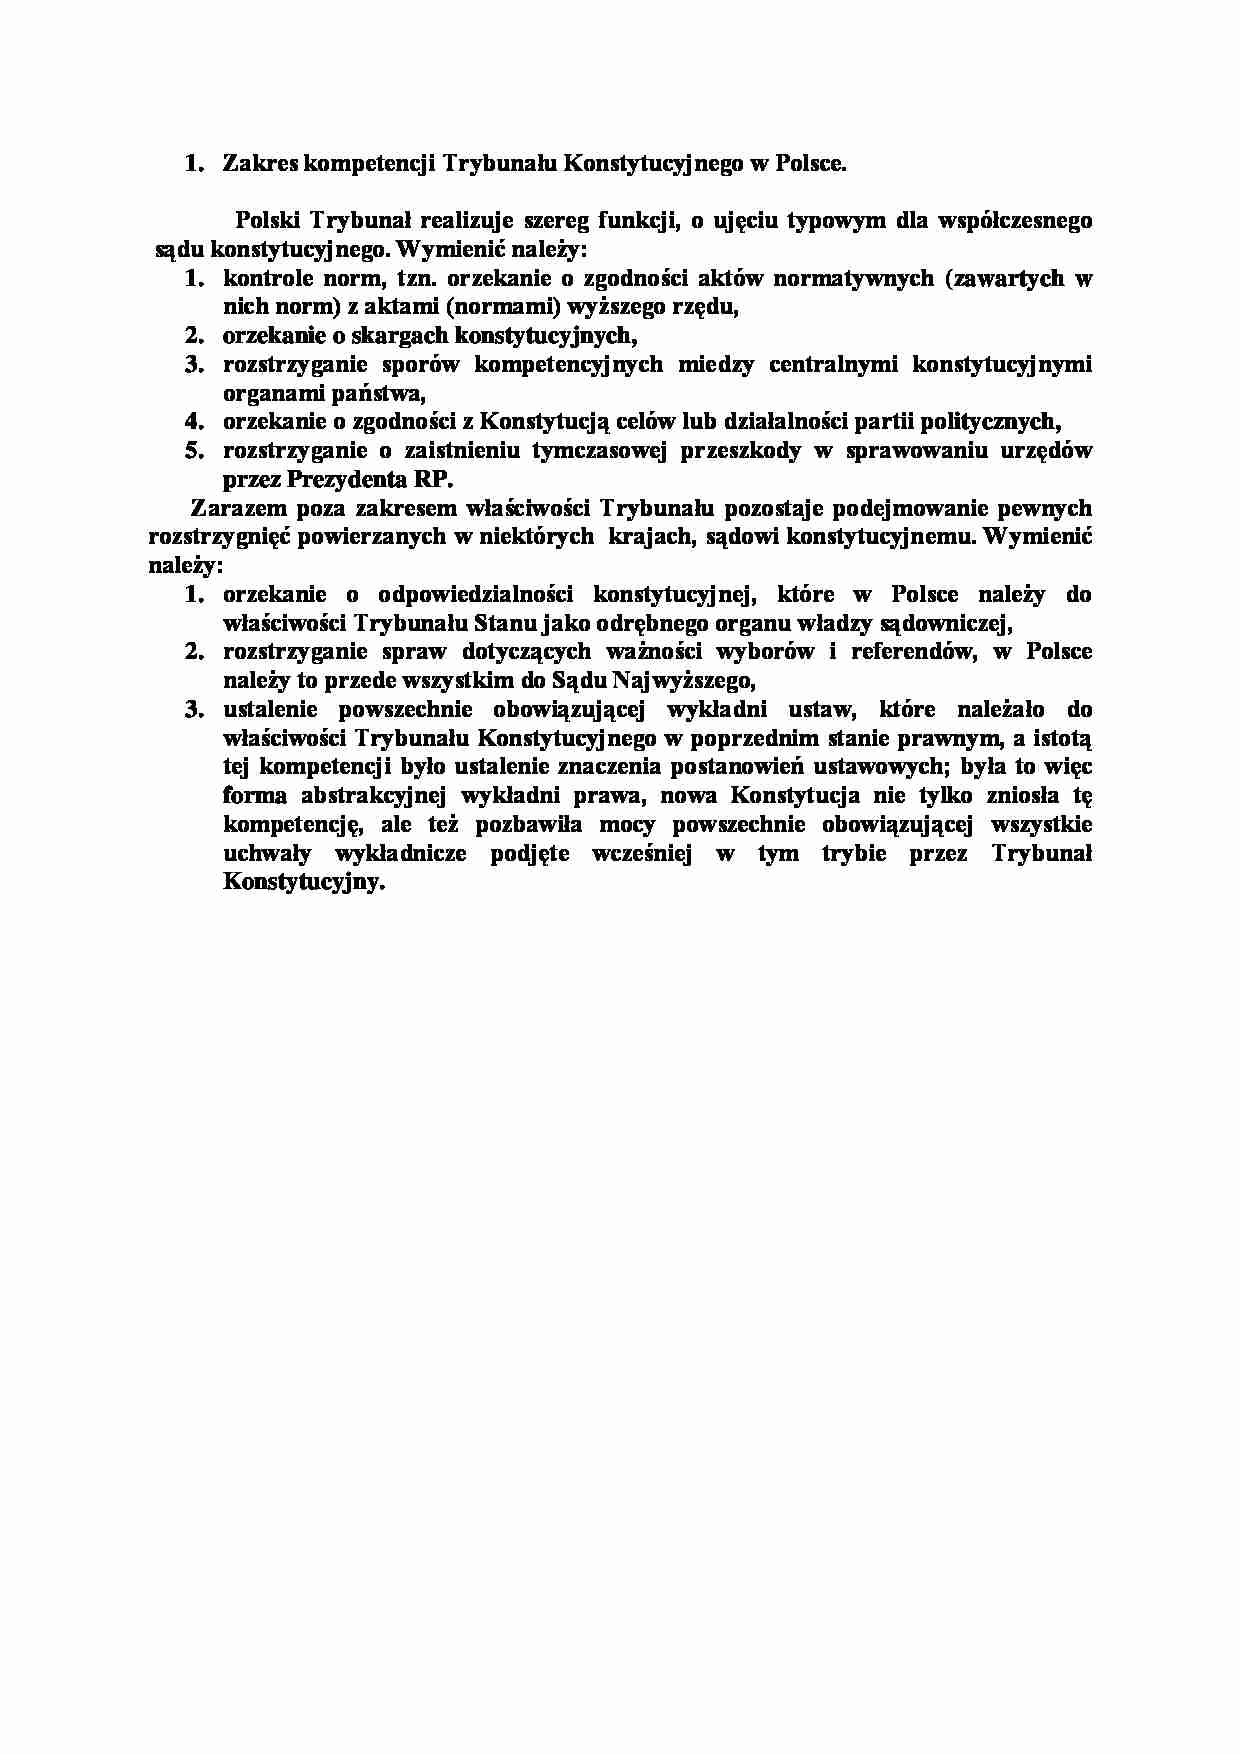 Zakres kompetencji Trybunału Konstytucyjnego w Polsce-opracowanie - strona 1